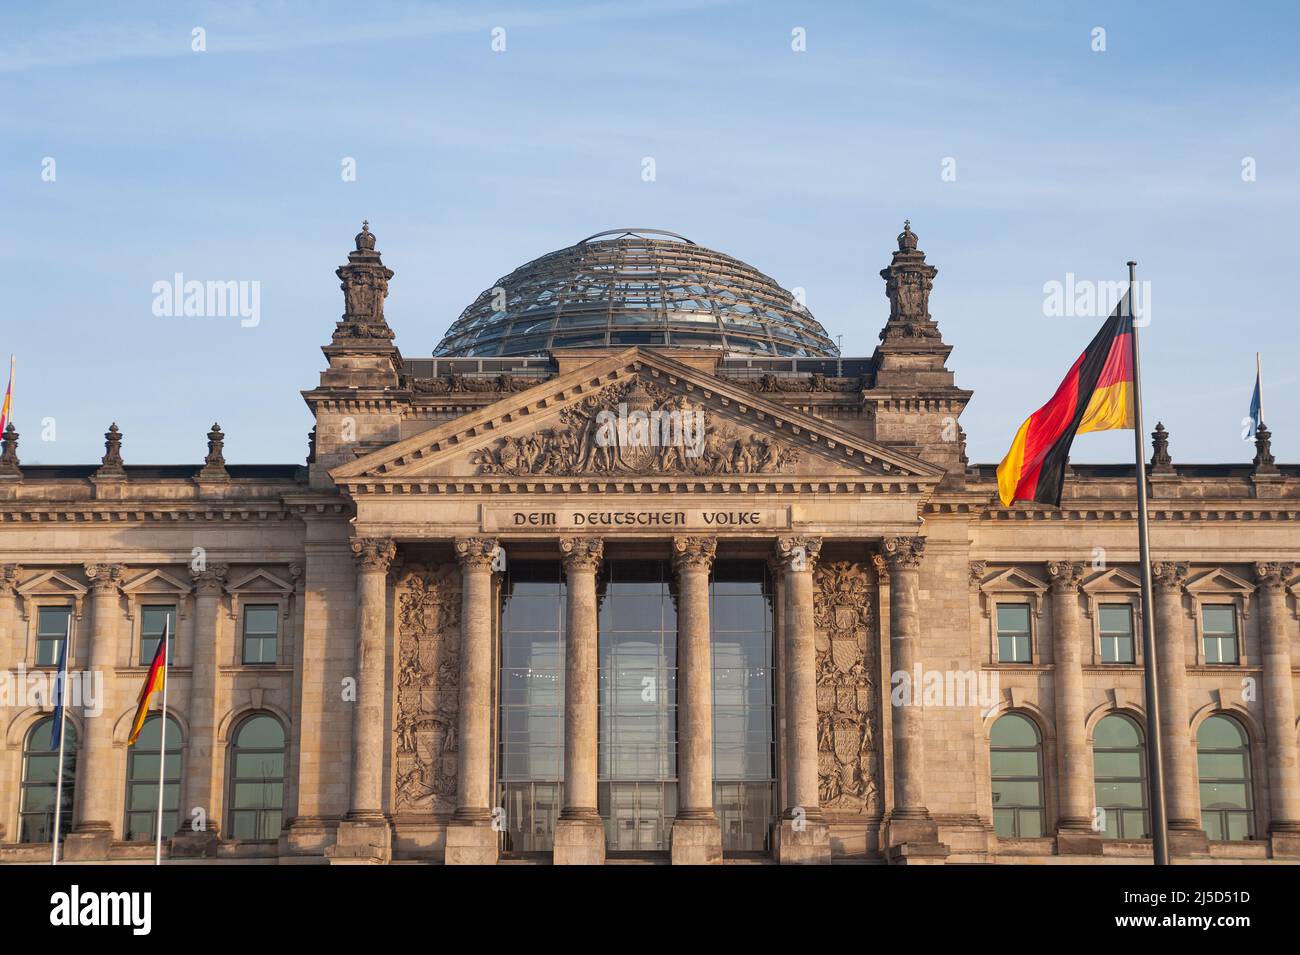 22.12.2021, Berlino, Germania, Europa - Vista sulla facciata ovest dell'edificio Reichstag nel quartiere Mitte. [traduzione automatizzata] Foto Stock